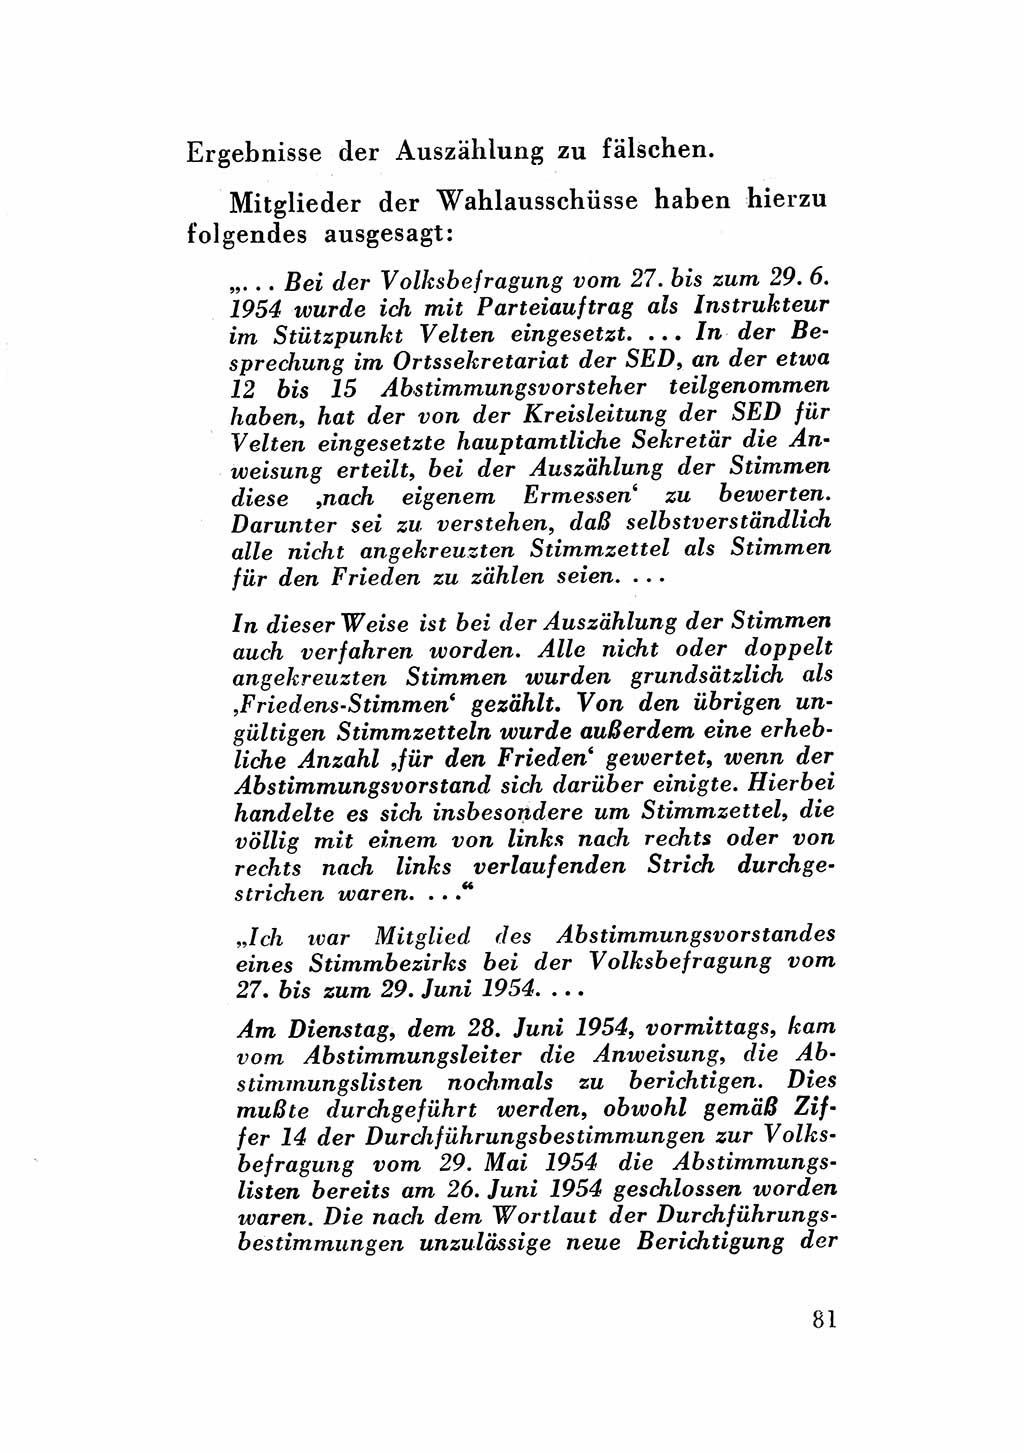 Katalog des Unrechts, Untersuchungsausschuß Freiheitlicher Juristen (UfJ) [Bundesrepublik Deutschland (BRD)] 1956, Seite 81 (Kat. UnR. UfJ BRD 1956, S. 81)